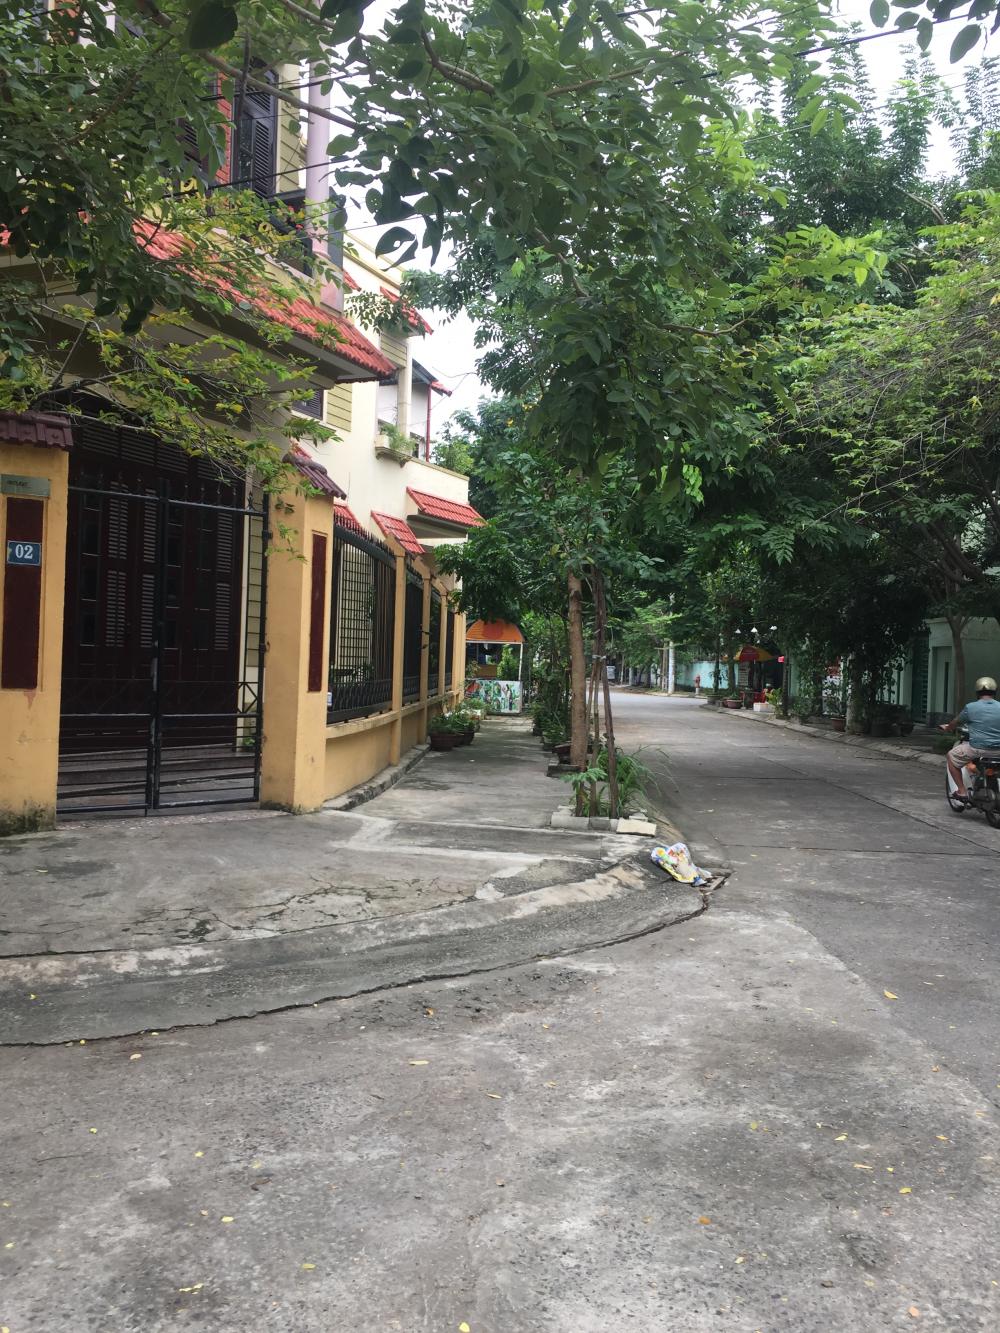 Bán nhà mặt phố tại đường Bãi Sậy, 1ường Khuê Trung, Cẩm Lệ, Đà Nẵng. Diện tích 85m2, giá 2,9 tỷ